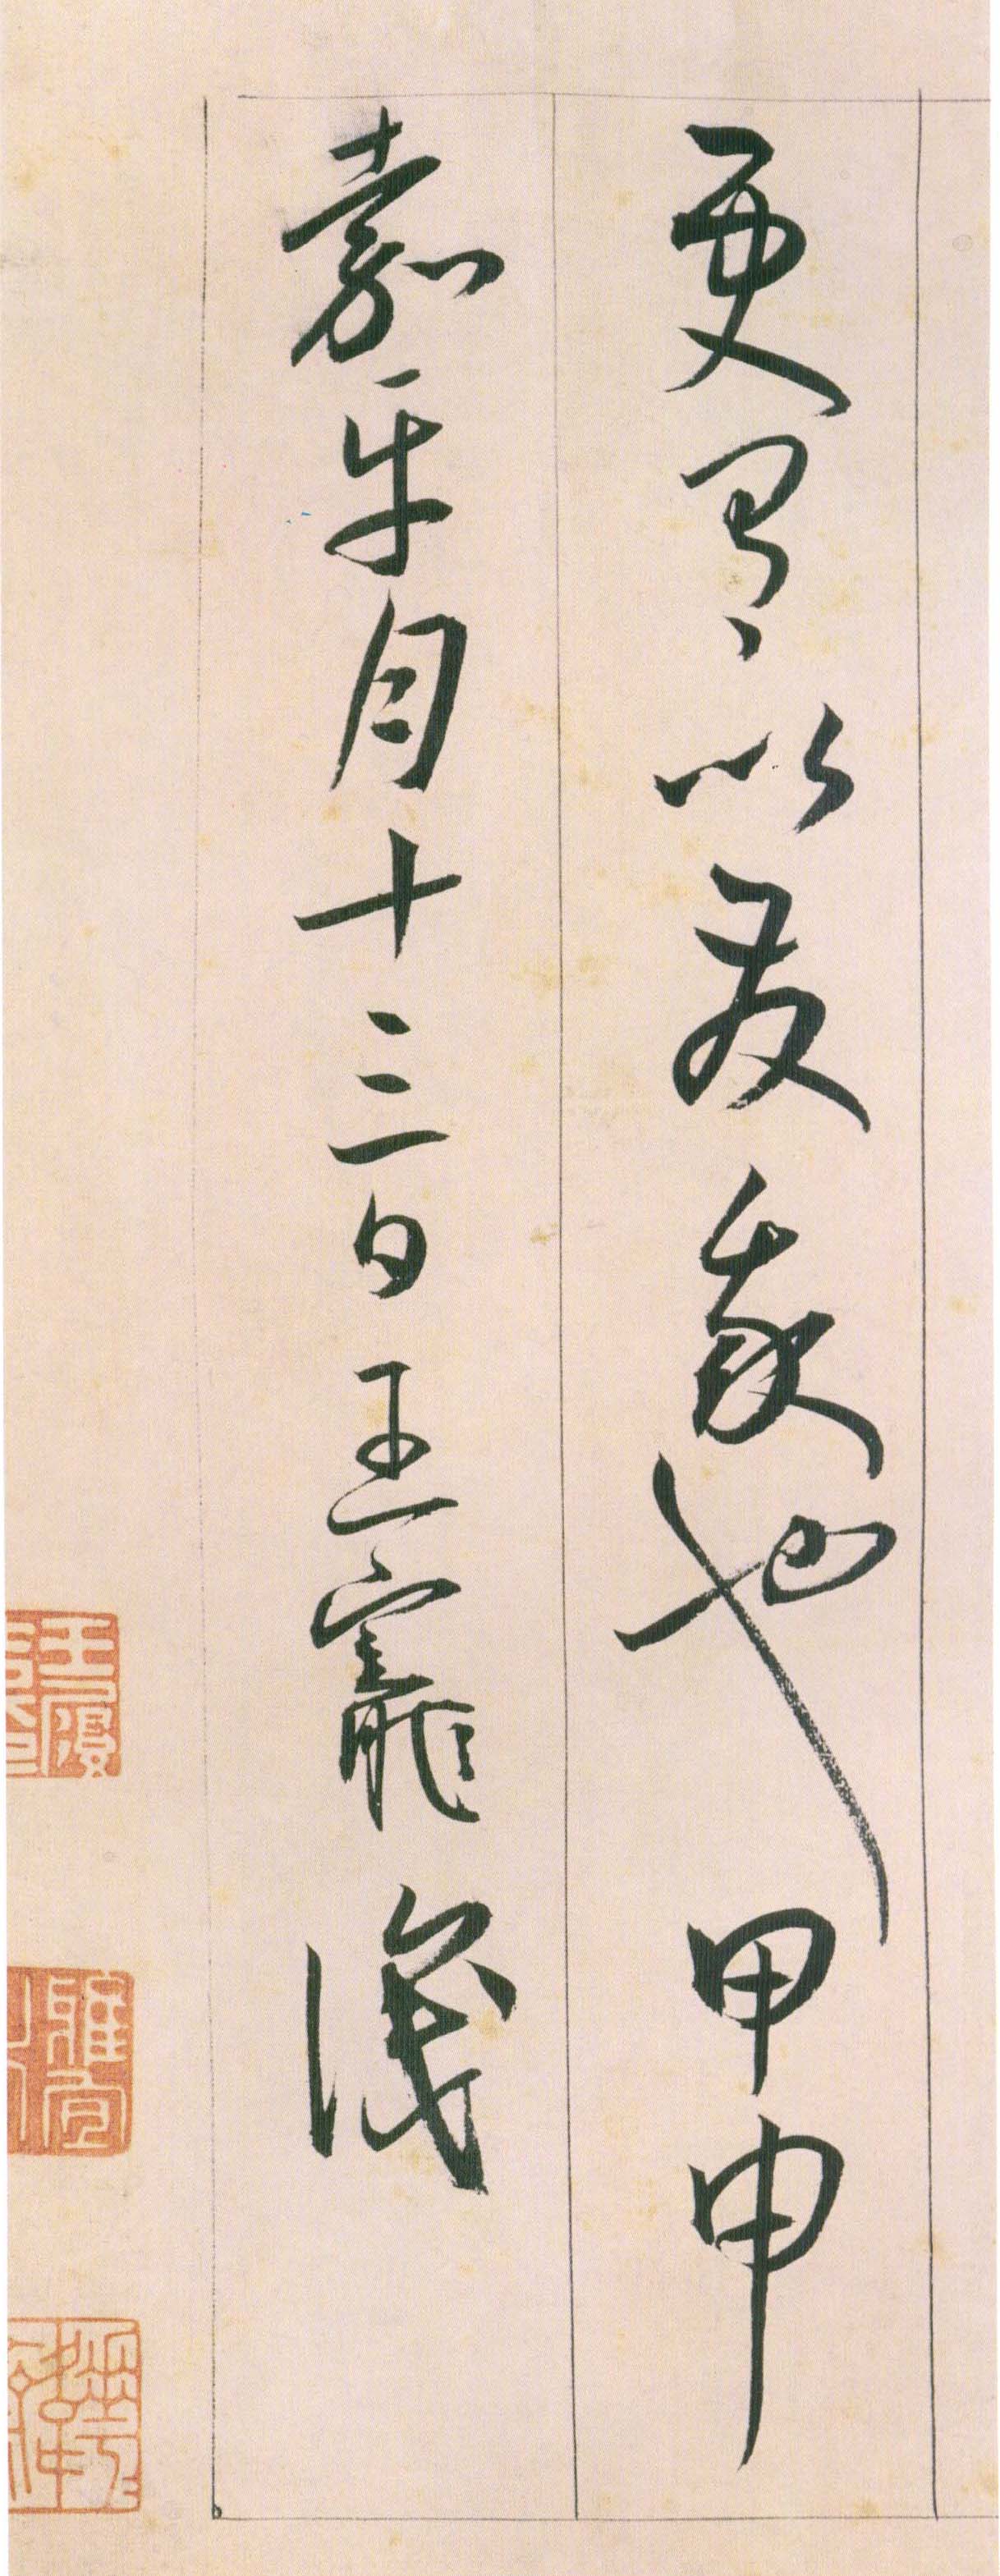 王宠《自书游包山诗》卷-天津艺术博物院藏(图32)